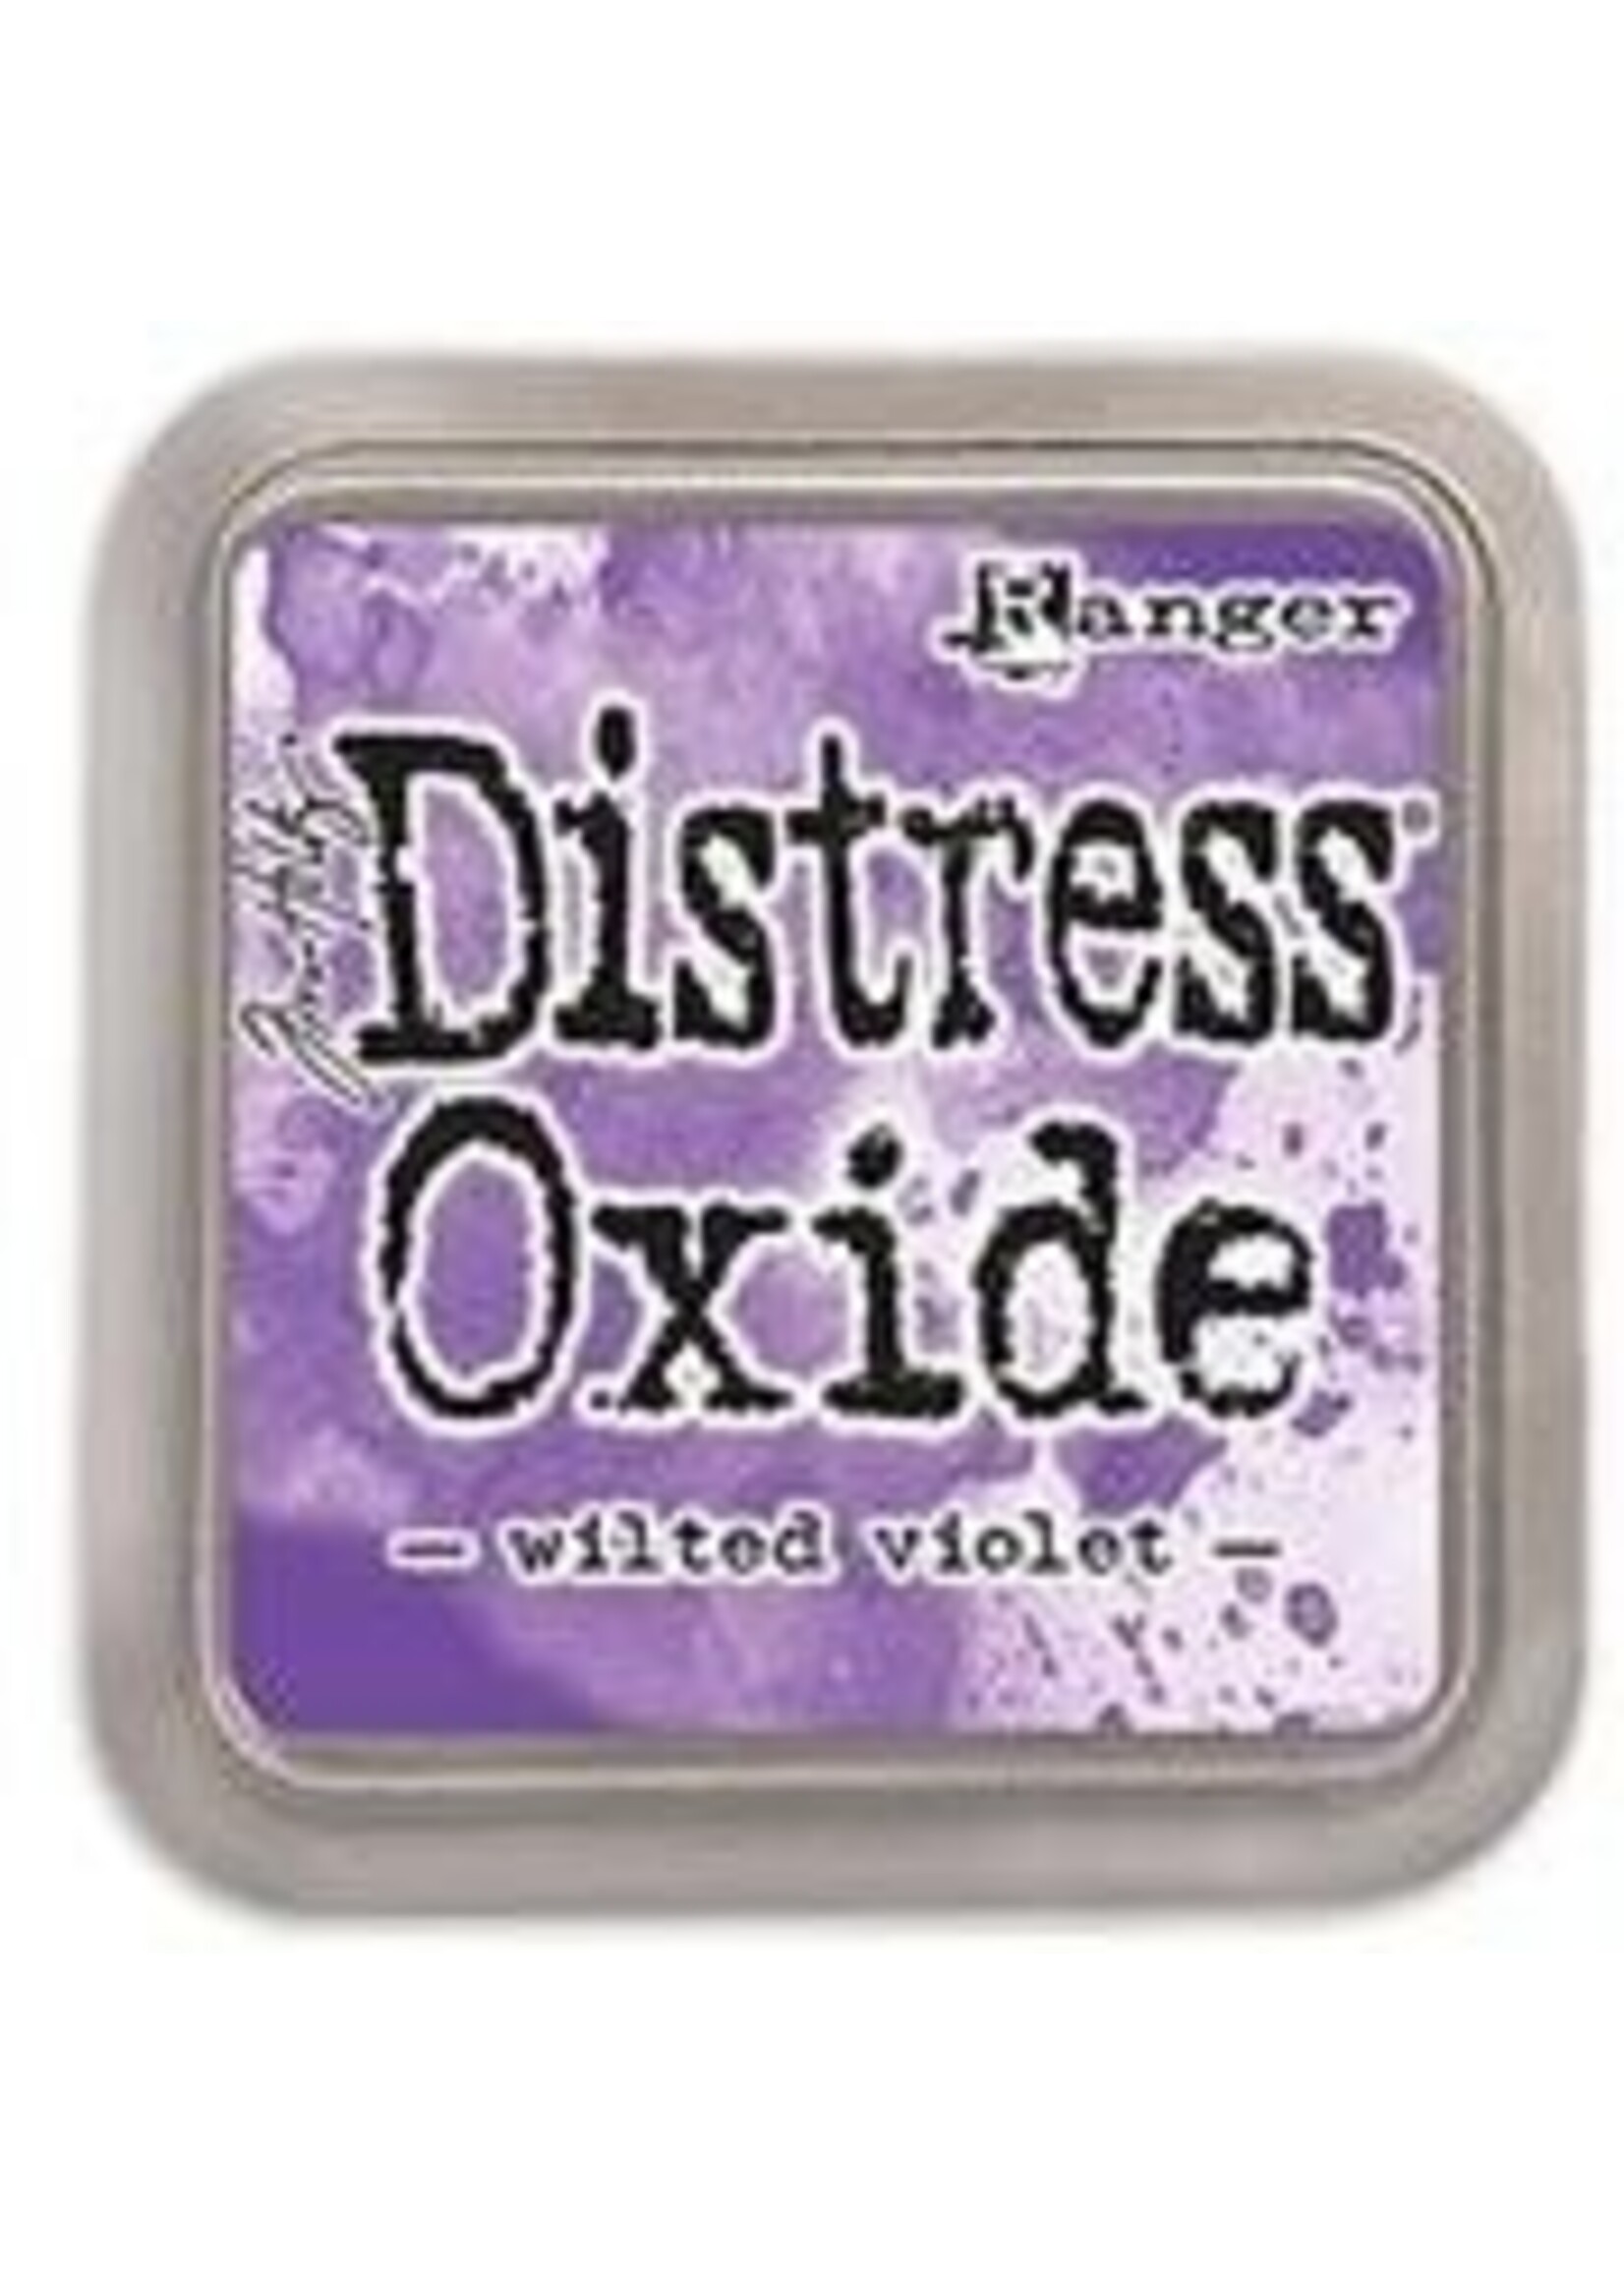 Ranger Tim Holtz Distress Oxide, Wilted Violet